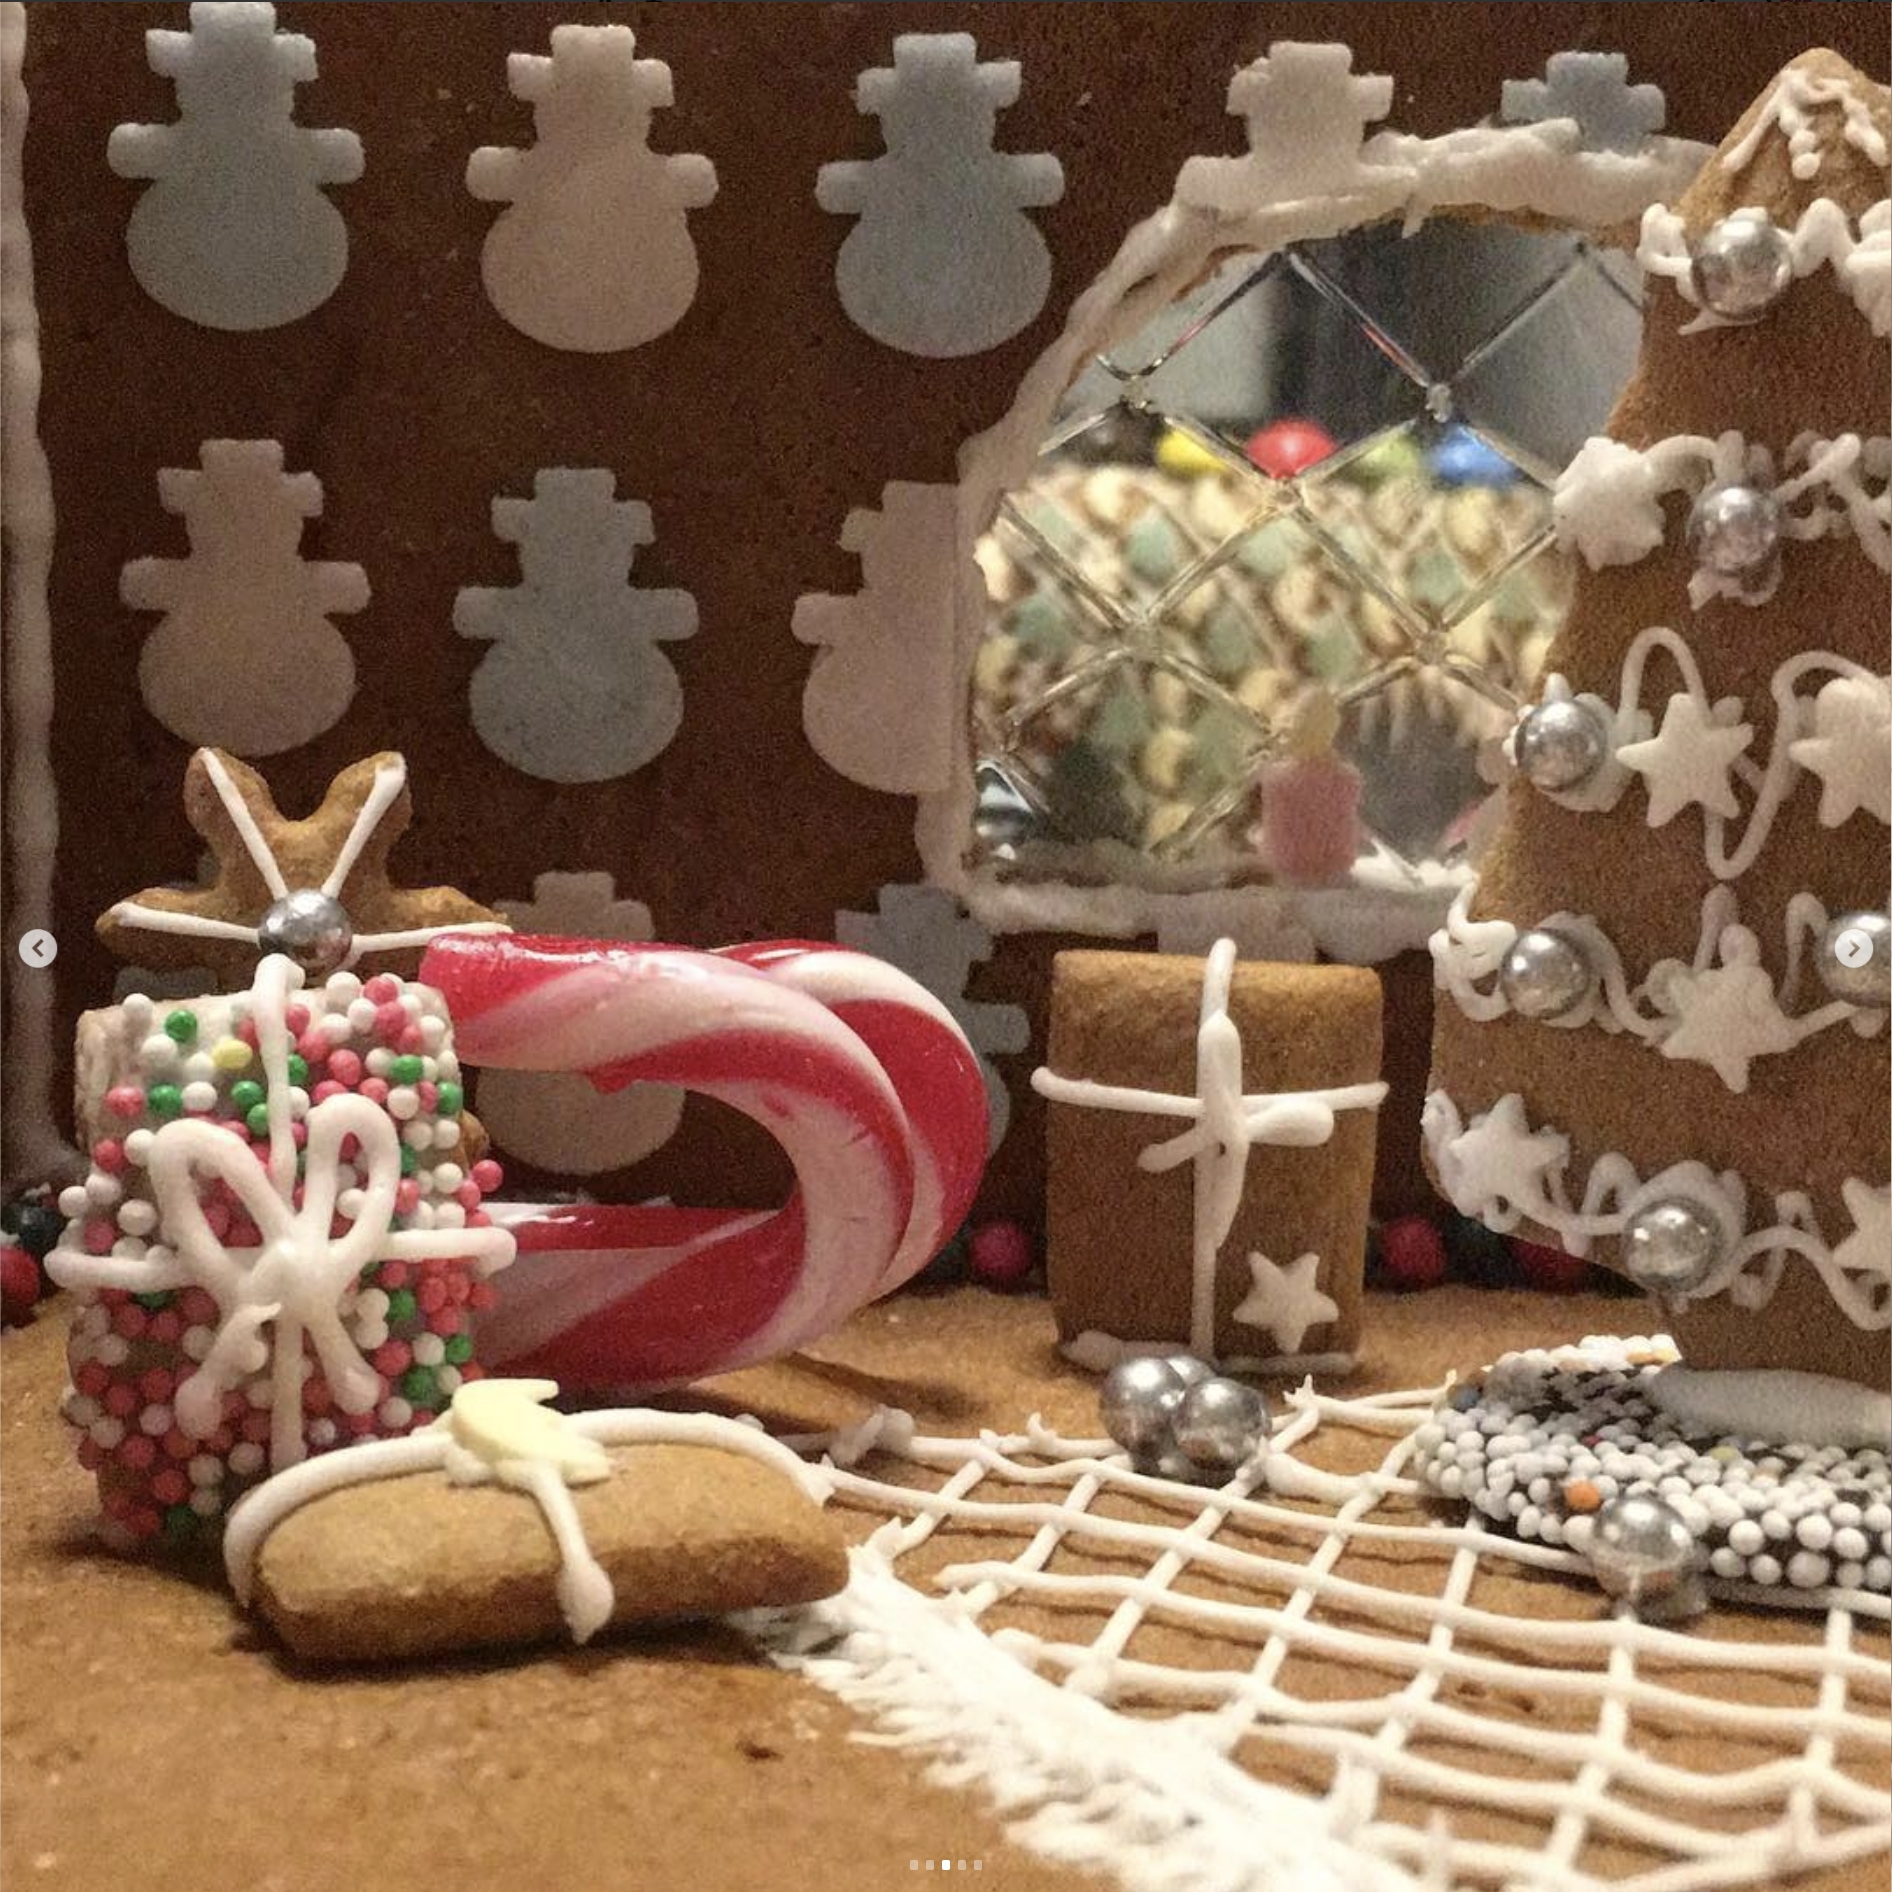 Tapete aus Oblaten-Schneemännern, Schlitten aus Zuckerstangen und bunte Geschenke liegen im #Lebkuchenhaus unterm Baum.